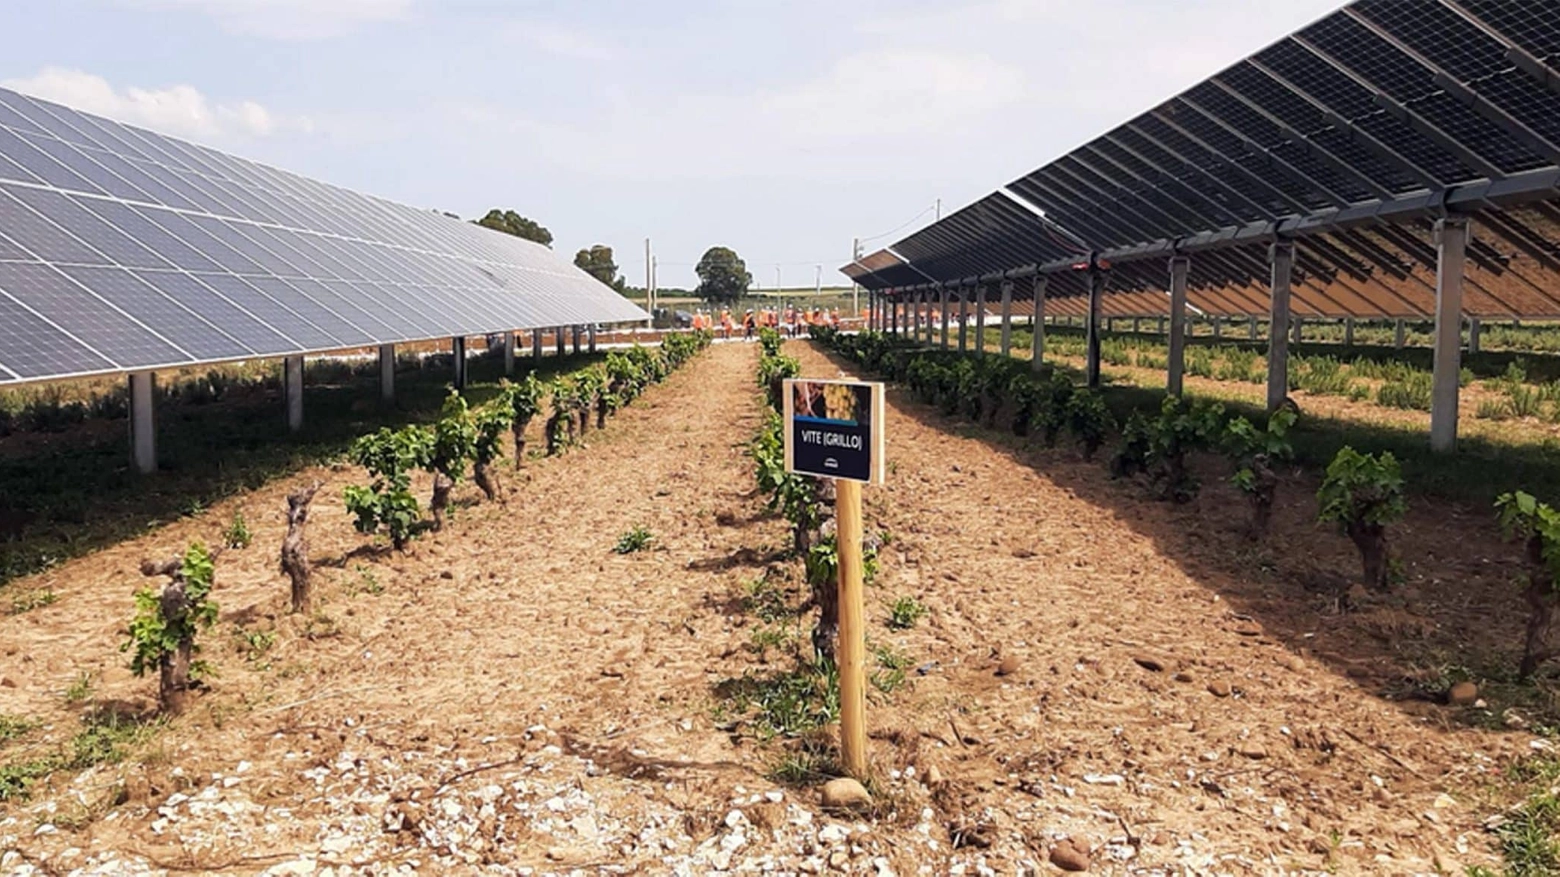 L’impianto, realizzato Marsala e Mazara del Vallo, coniuga la produzione di energia rinnovabile con le colture agricole a vantaggio dello sviluppo e della valorizzazione del territorio